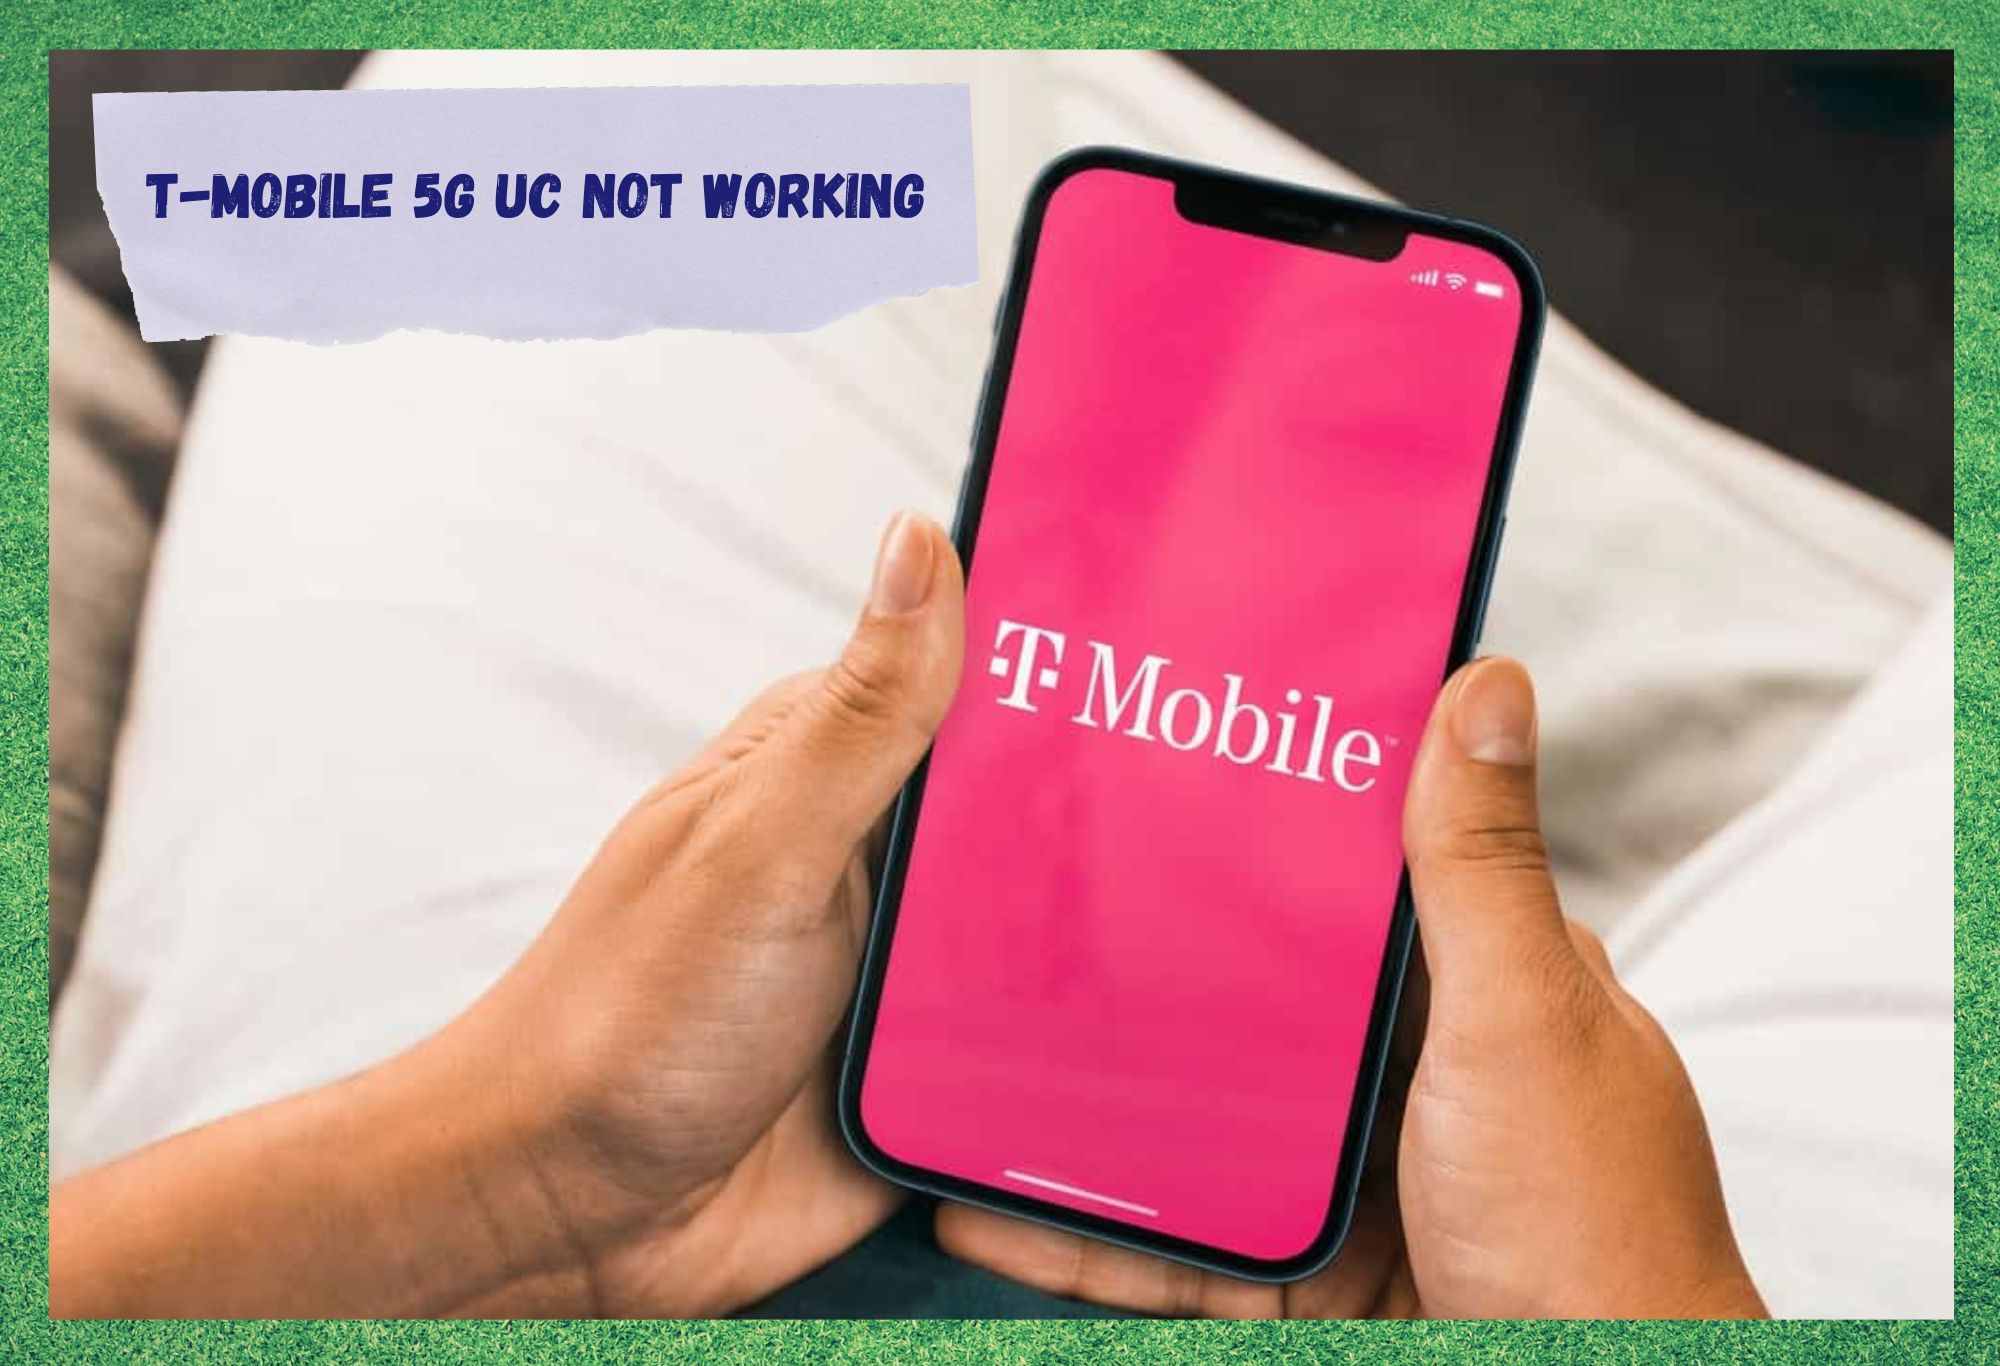 4 λύσεις για το T-Mobile 5G UC που δεν λειτουργεί